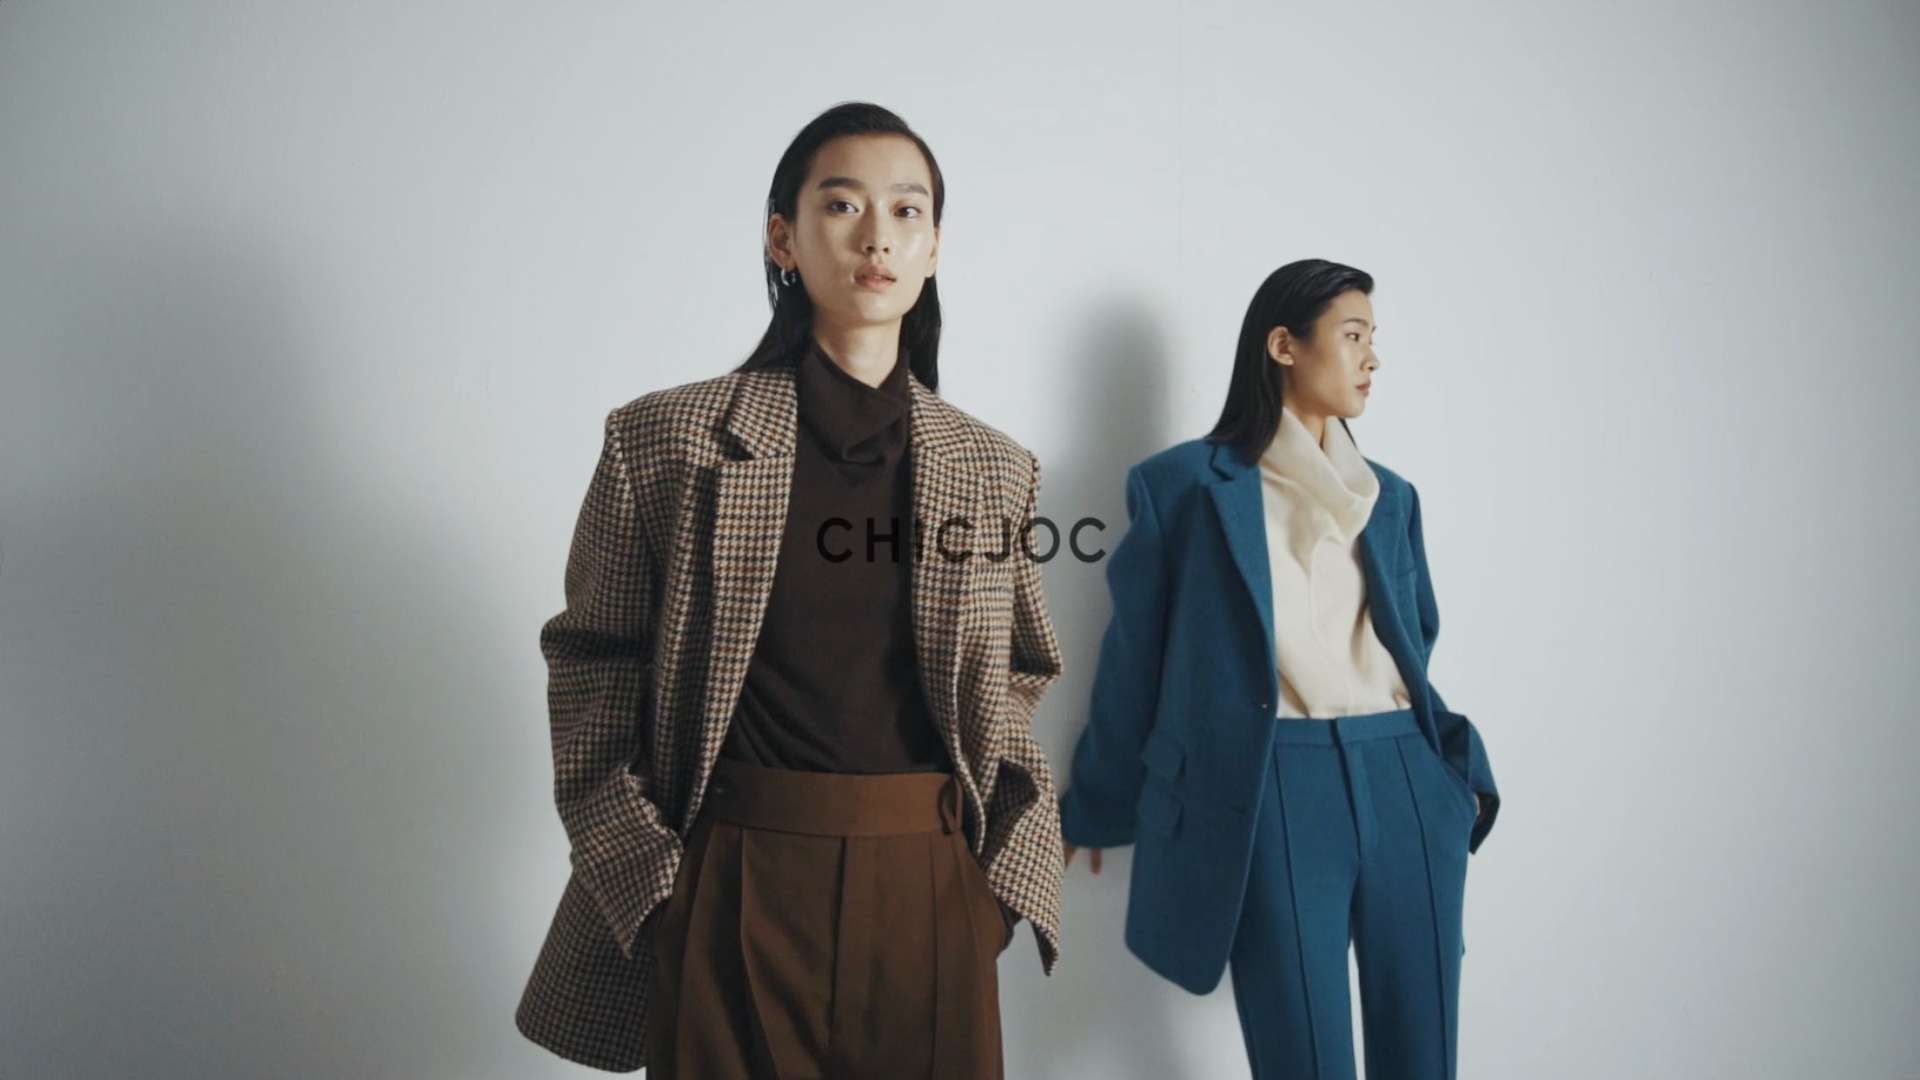 CHIC JOC 长-全衣服